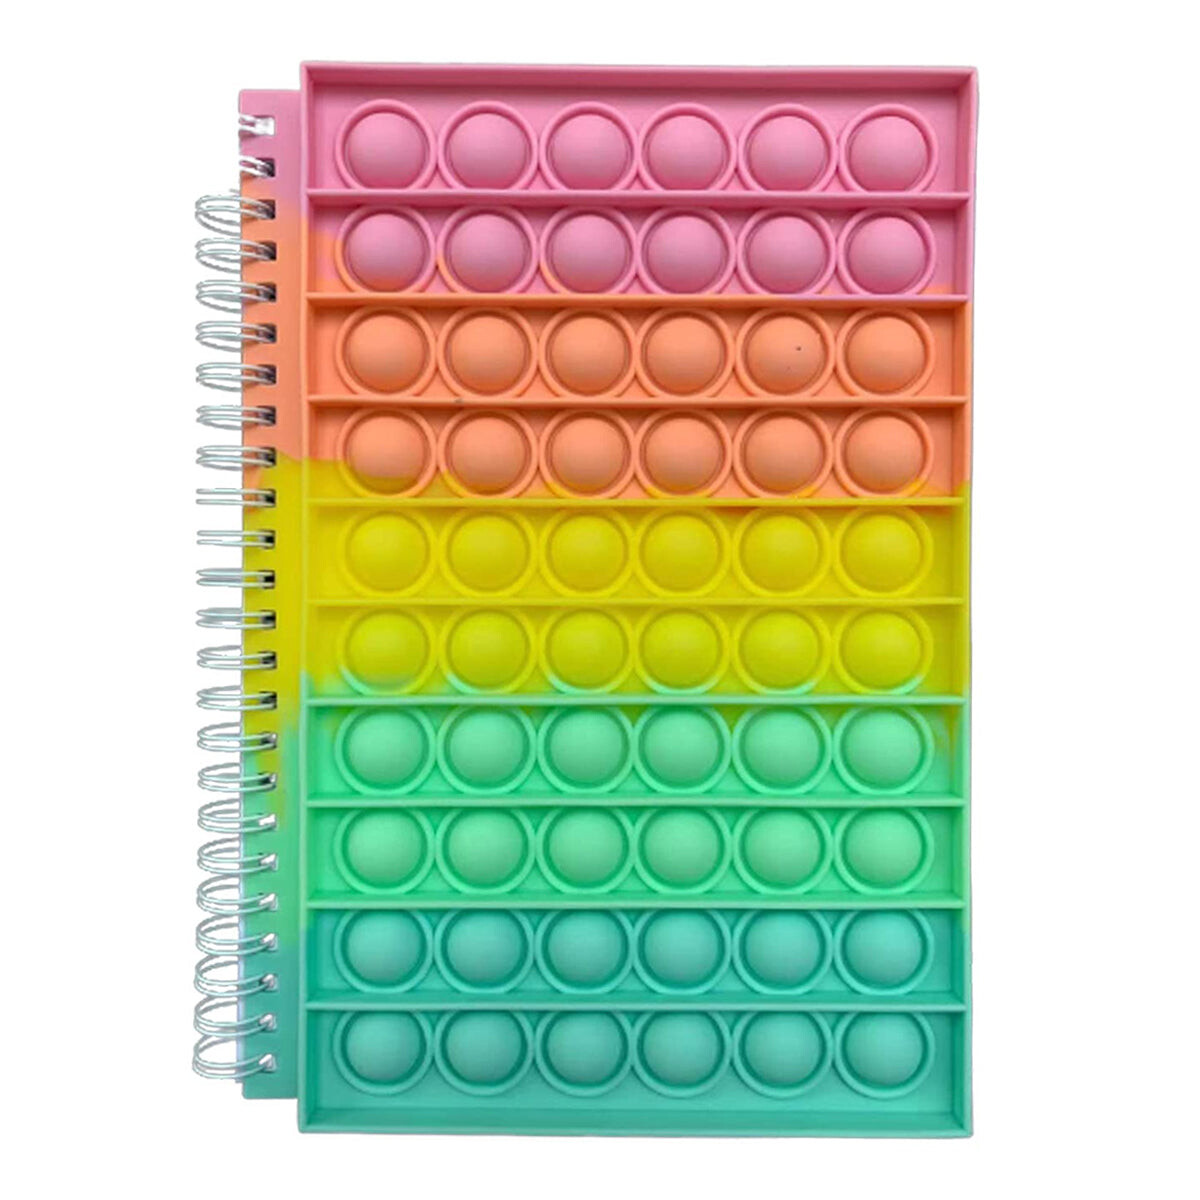 Cuaderno Espiral Pop It Real 16x14cm Varios Colores - Arcoiris 